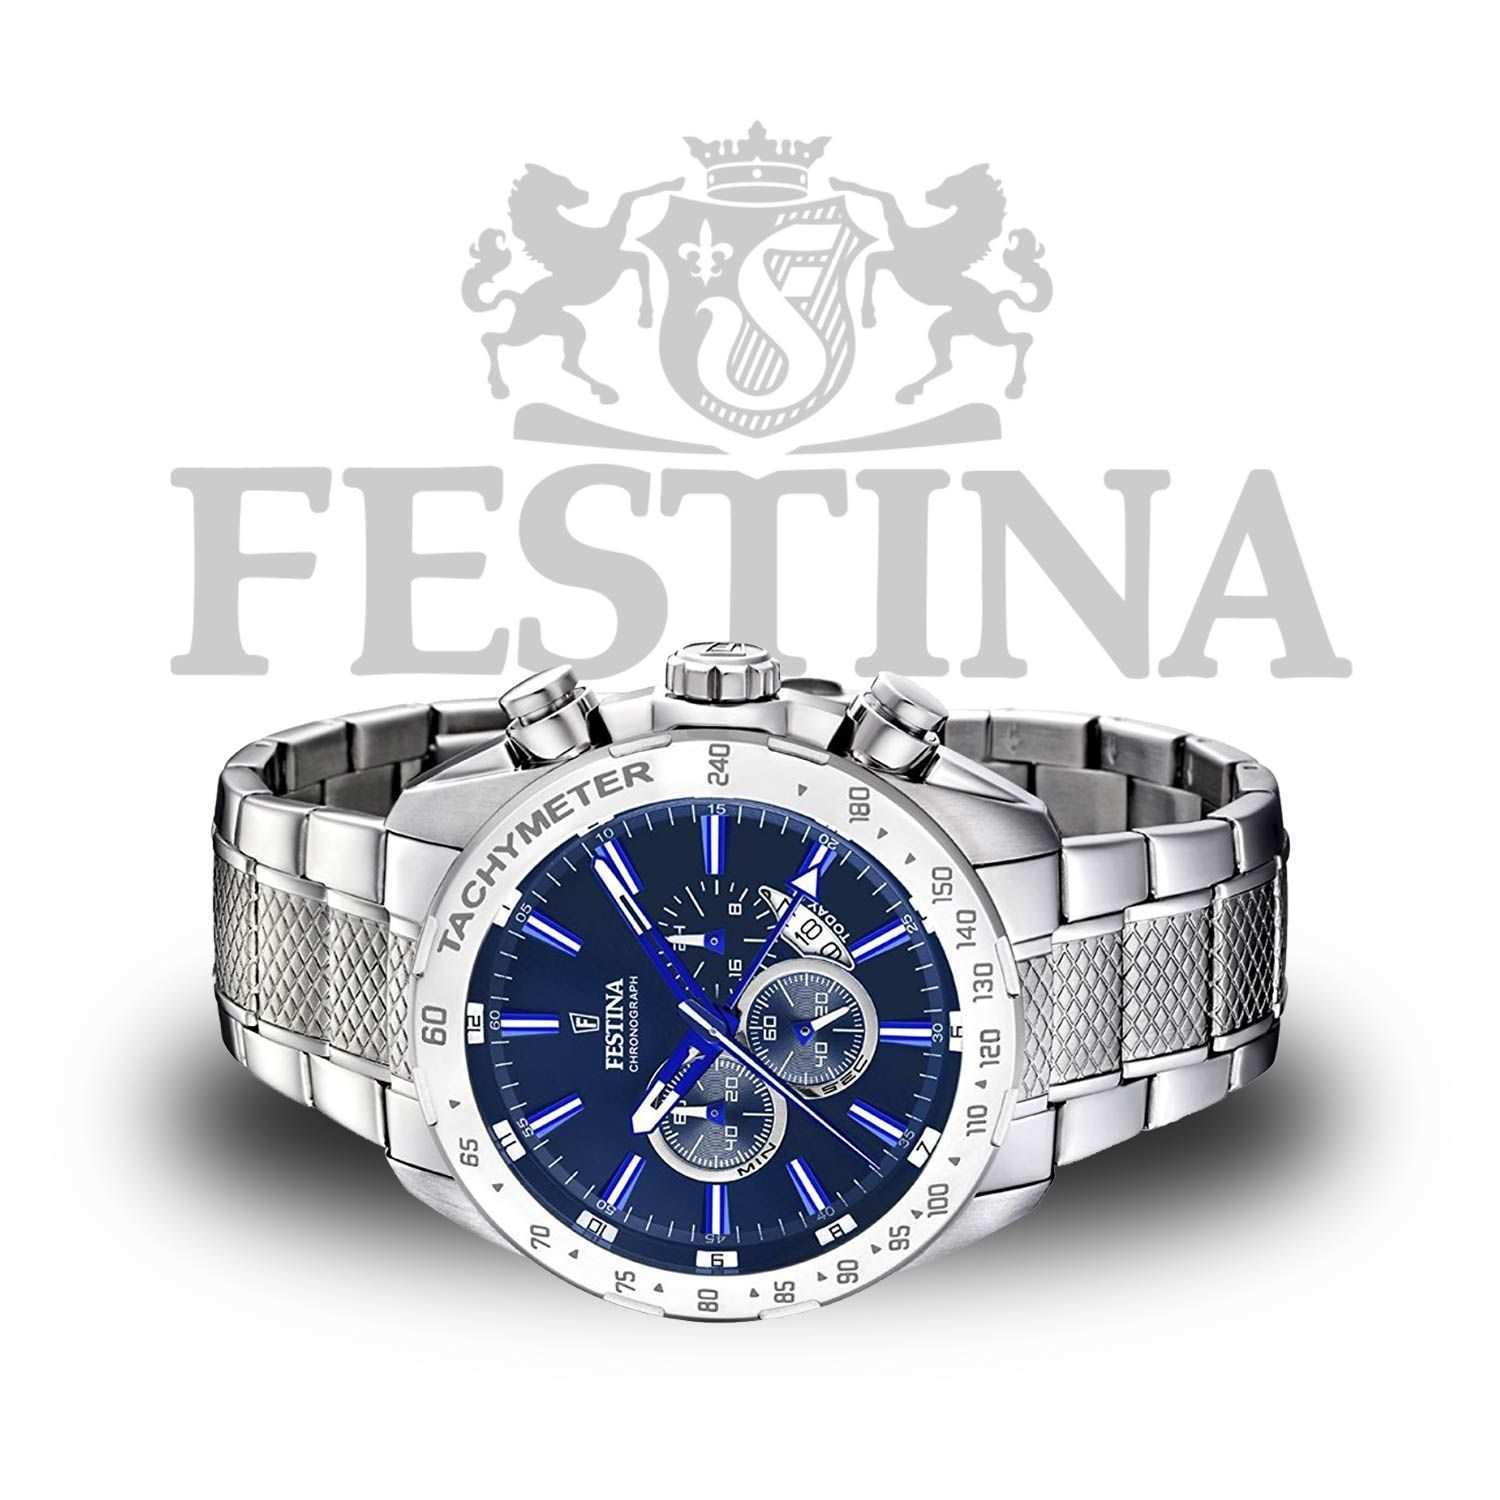 Festina Chronograph F16488 B Aus Edelstahl In Silber Blau Mit Tachymeter Und Miyota Uhrwerk Silber Edelstahl Stahl